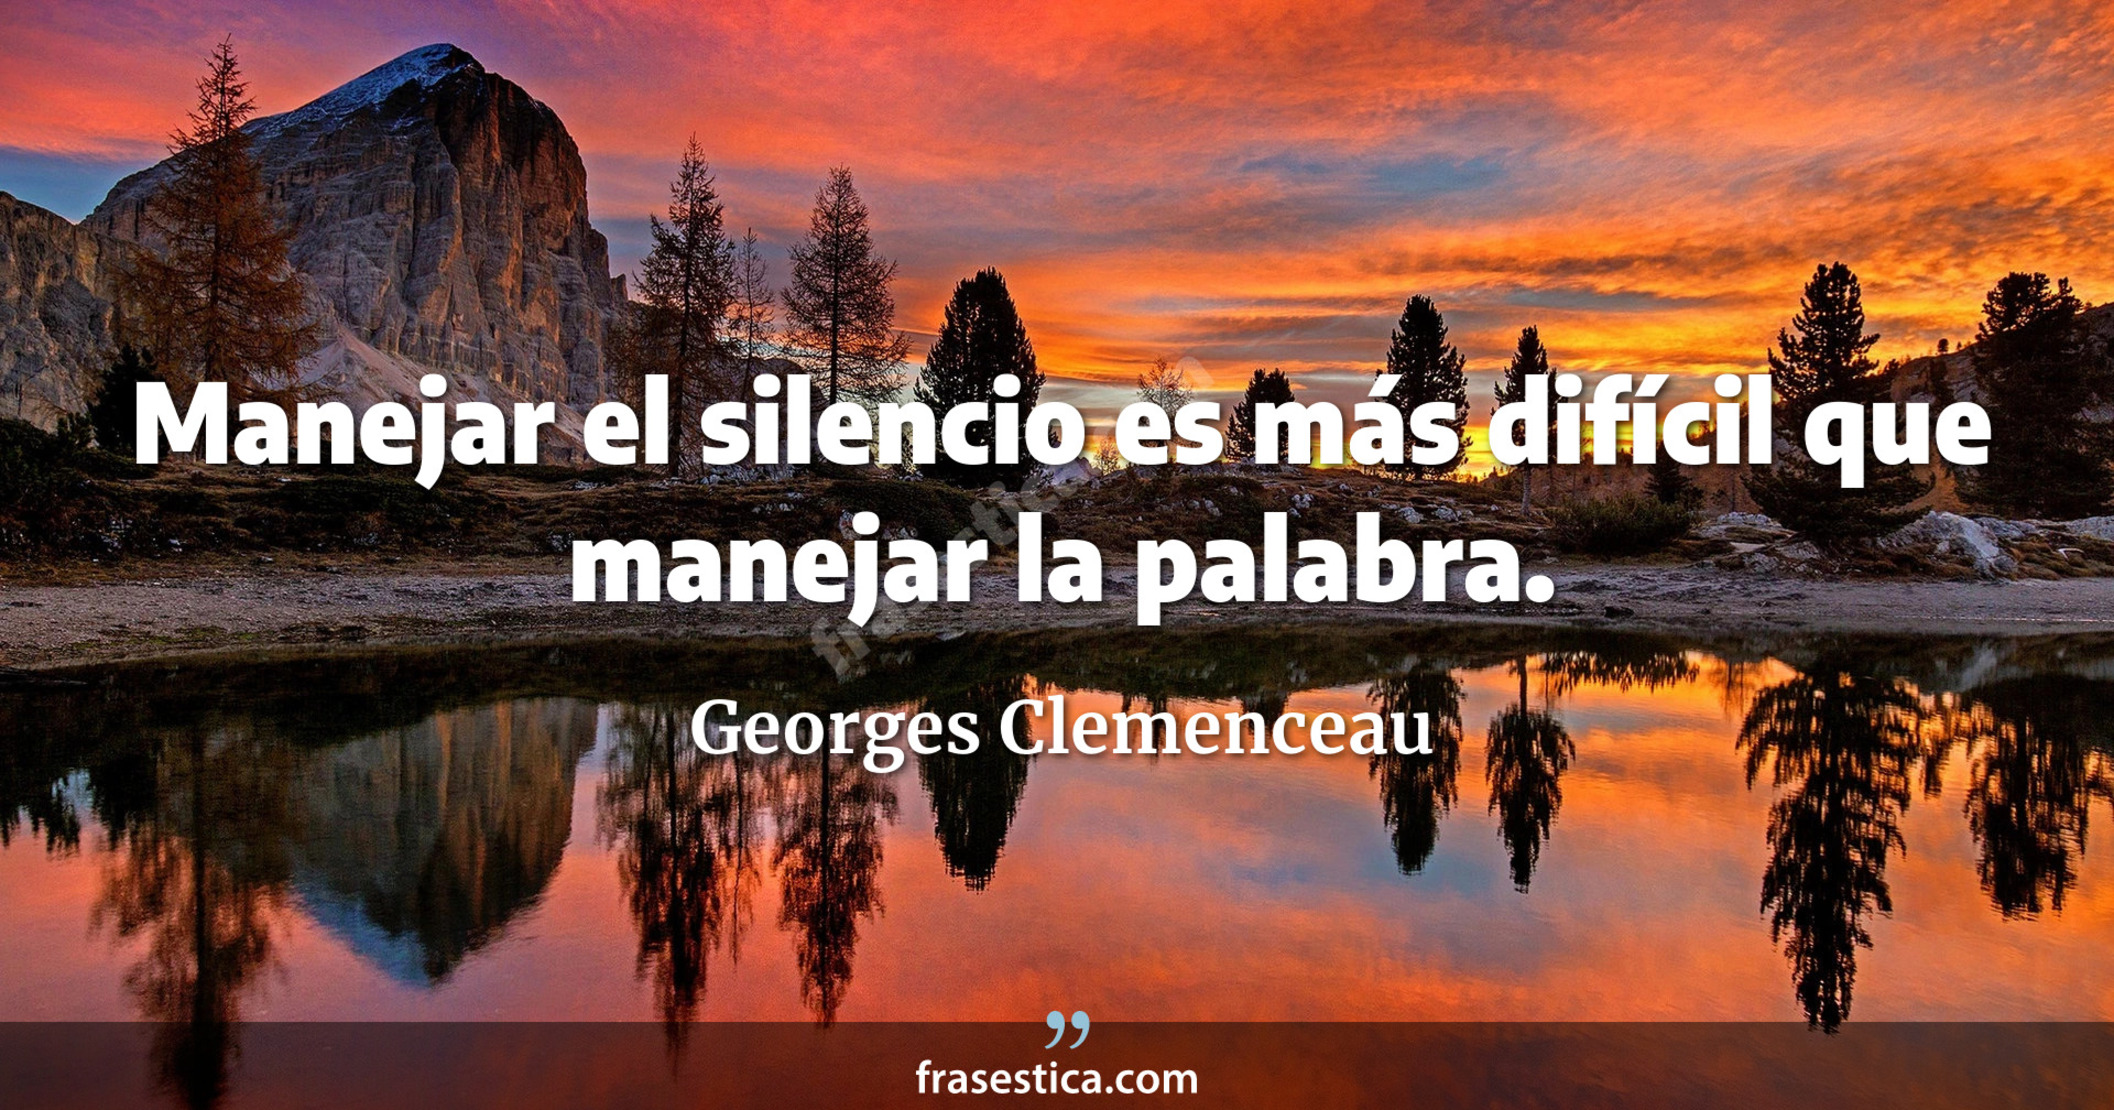 Manejar el silencio es más difícil que manejar la palabra. - Georges Clemenceau